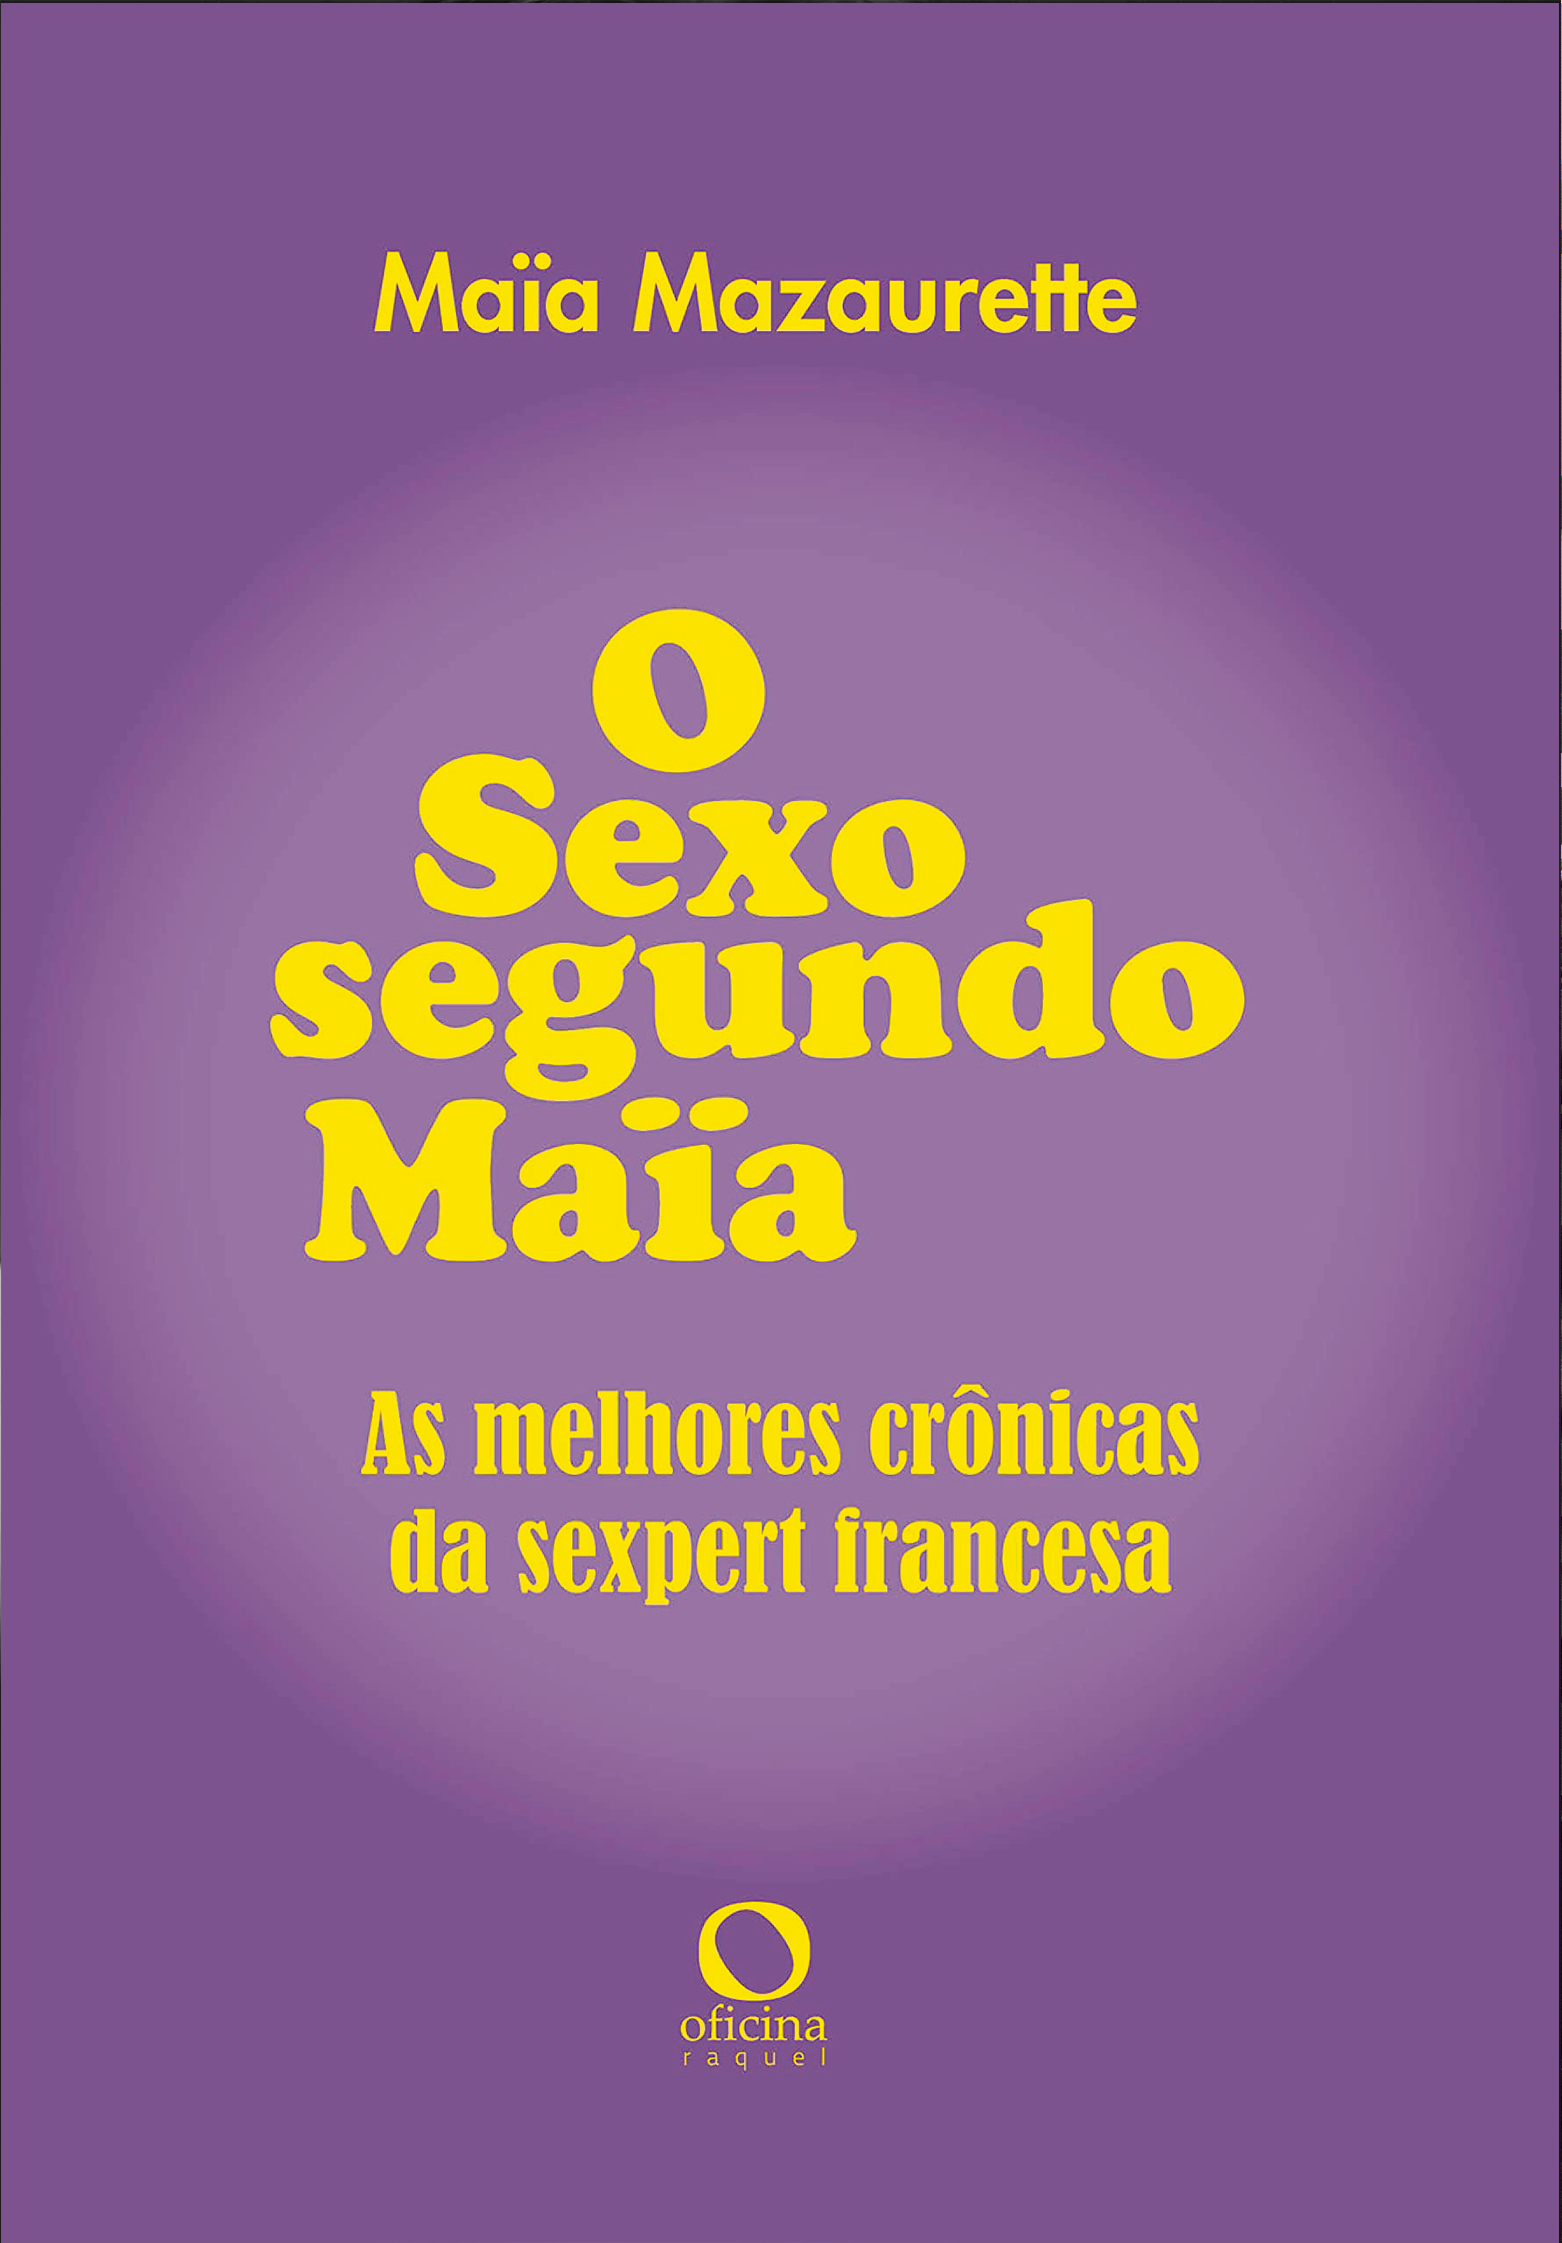 Cultura_Sexo segundo Maia (Foto: divulgação)